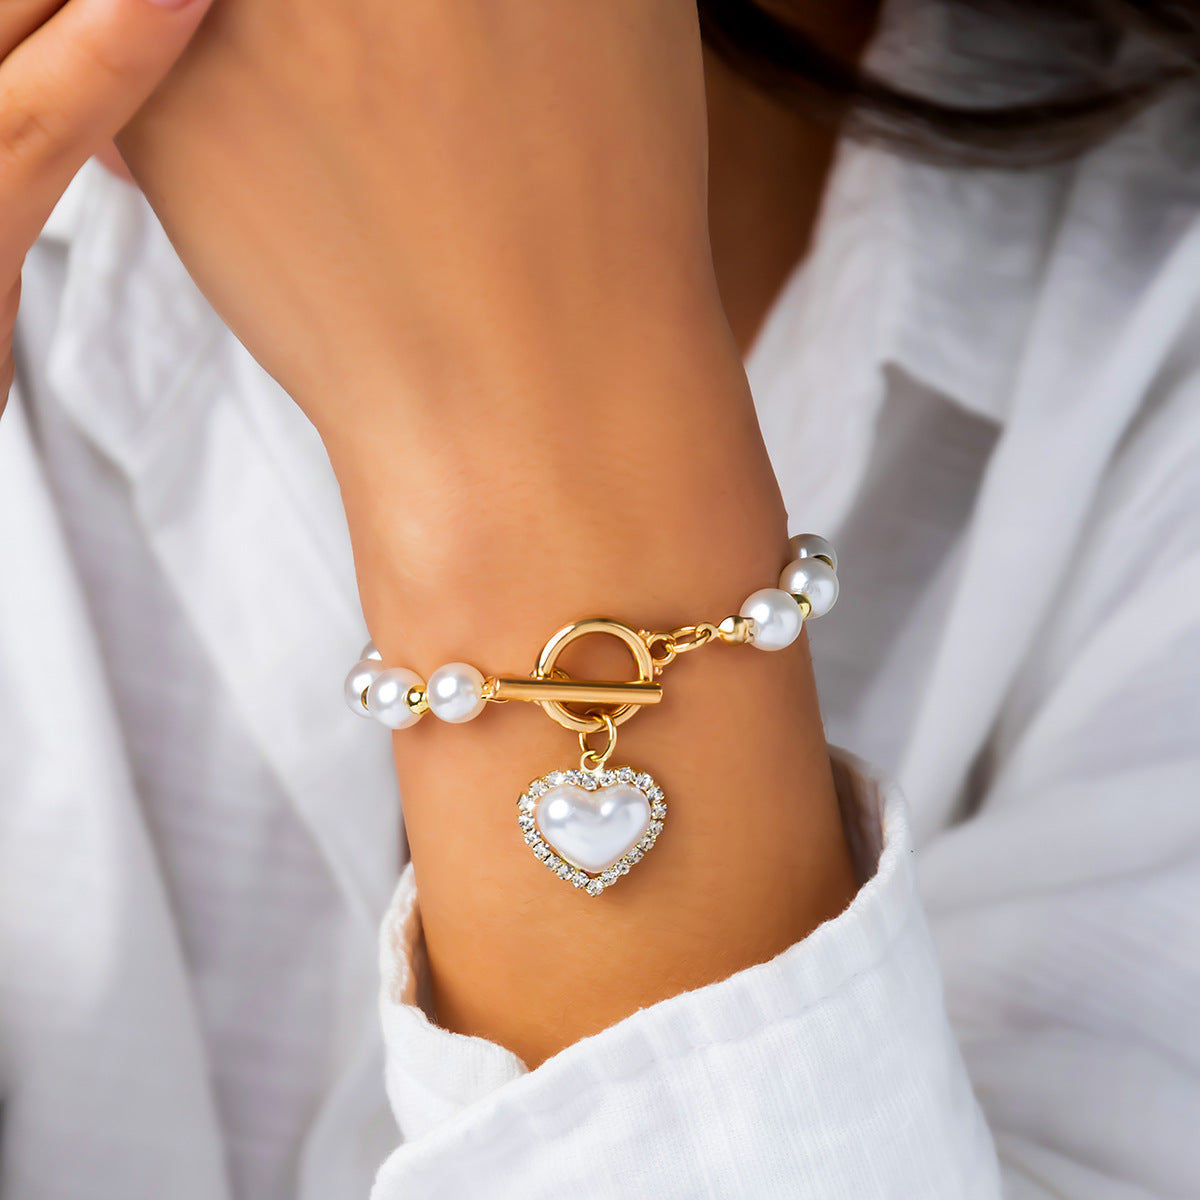 Women's Sweet Cool Imitation Pearl Suit Personality Cross Bracelets